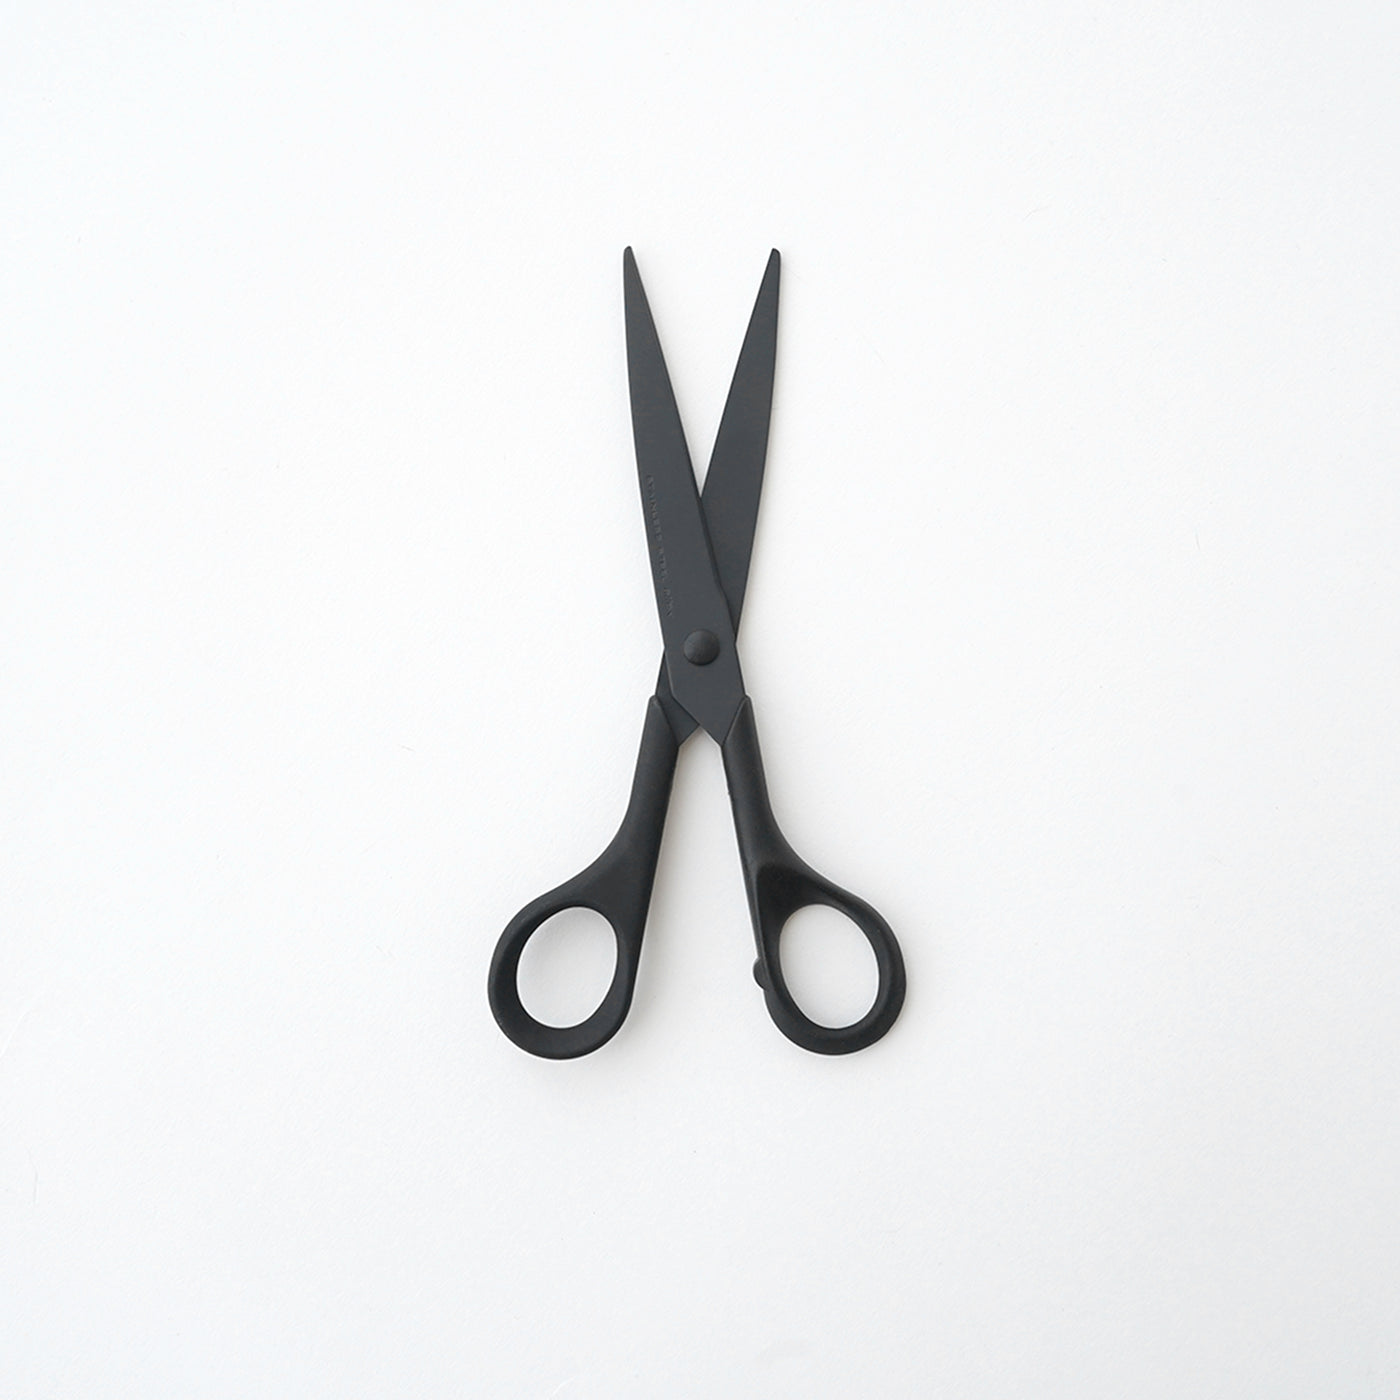 ALLEX Black Japanese Scissors